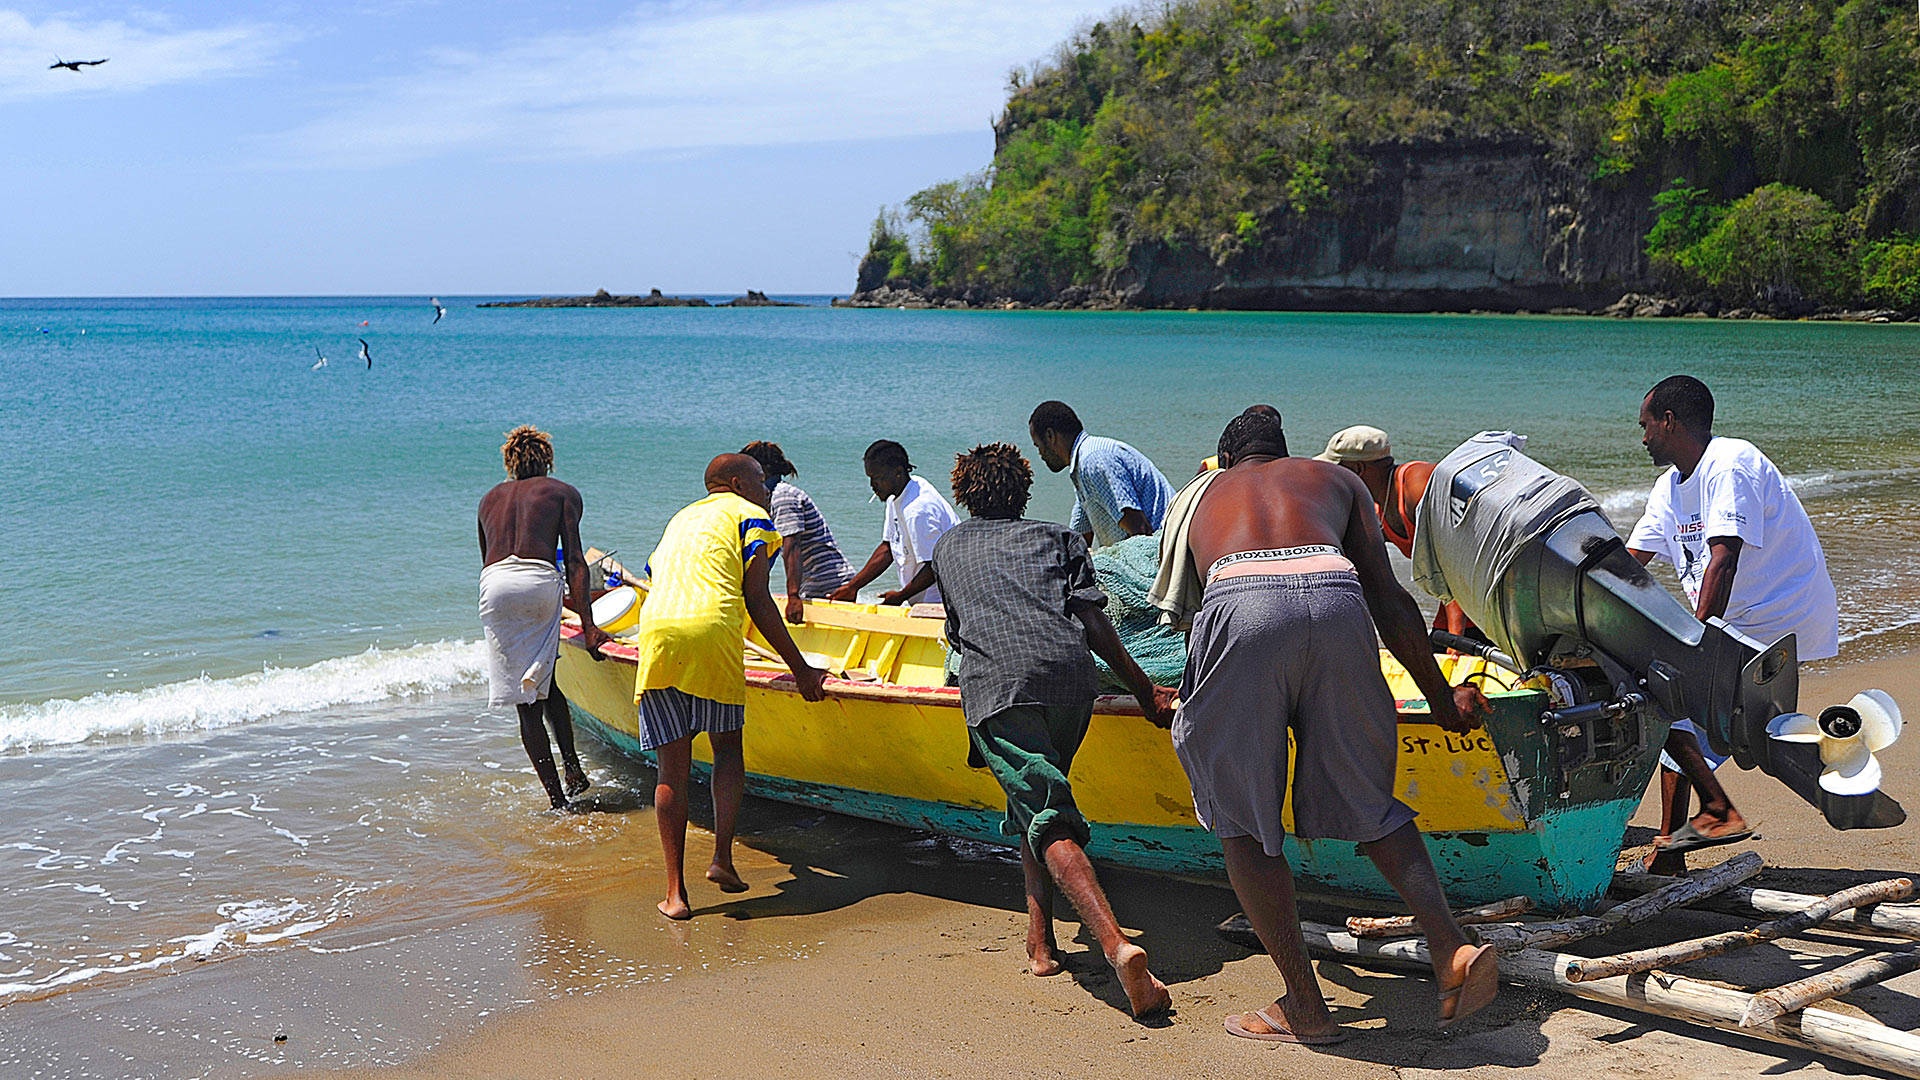 St. Lucia-mænd, der skubber en båd Wallpaper